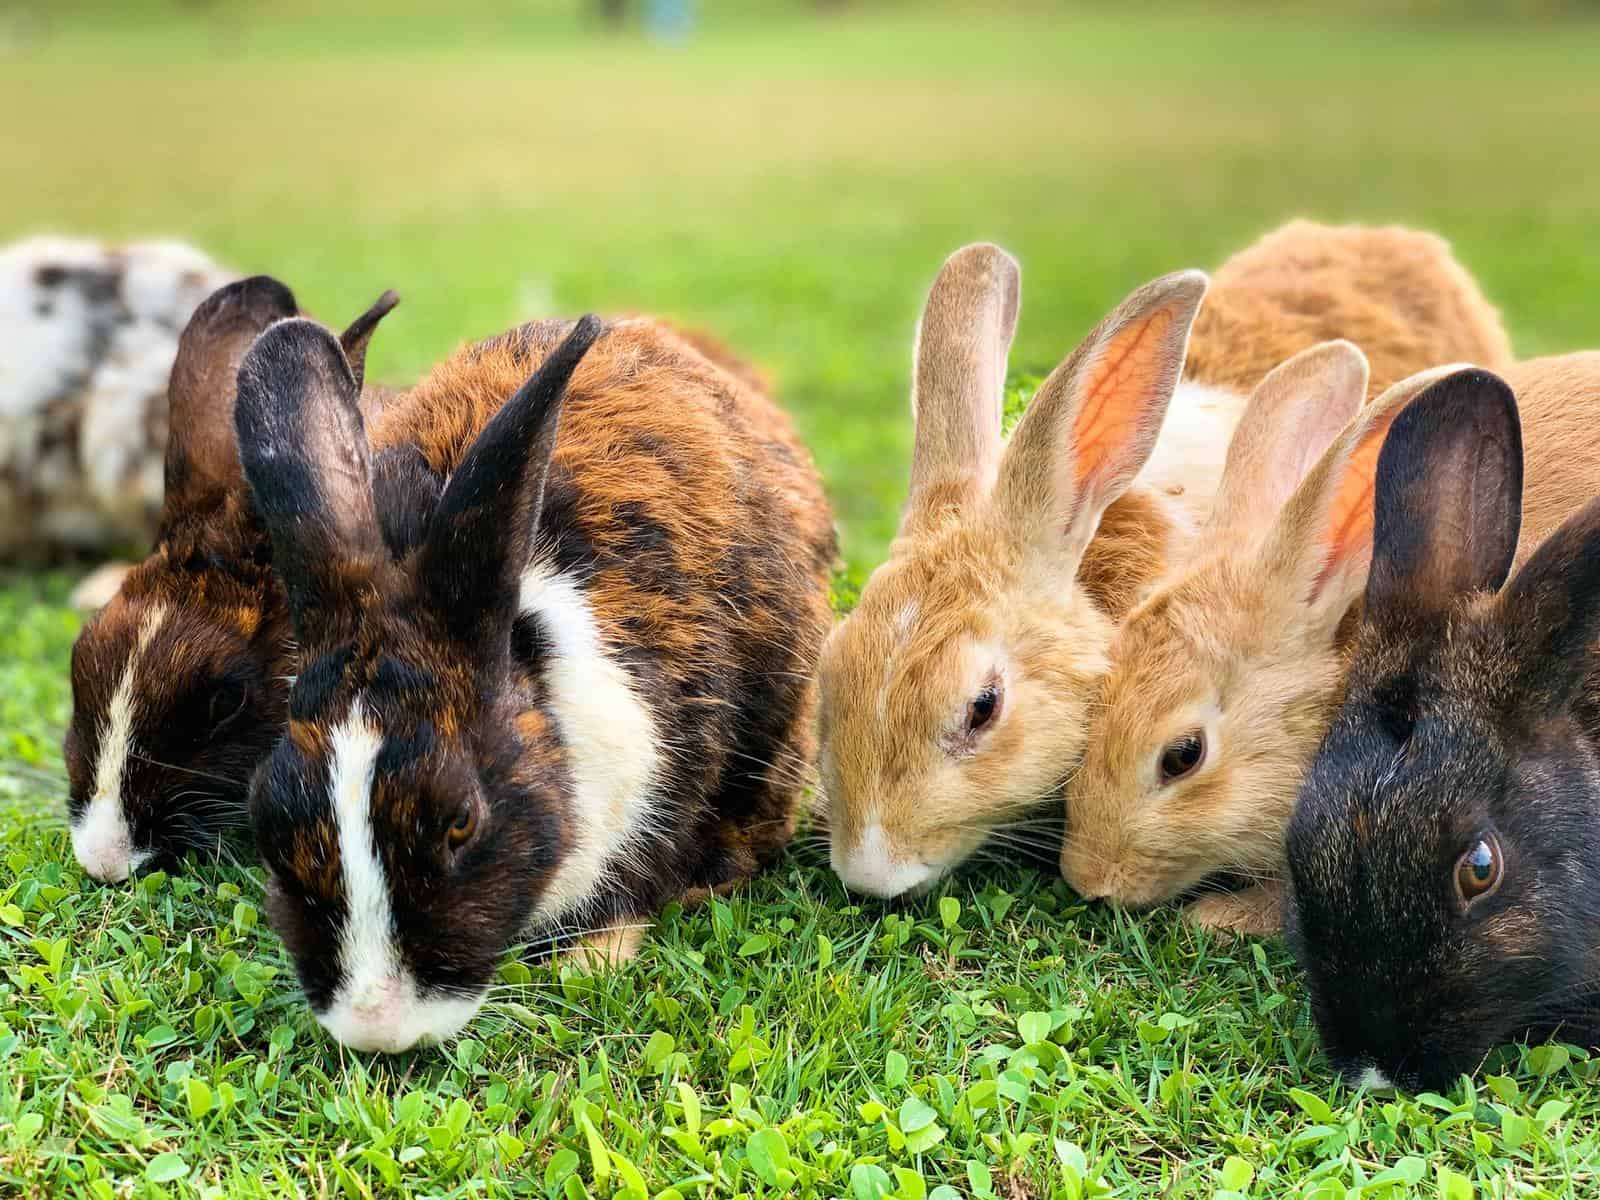 Rabbits group